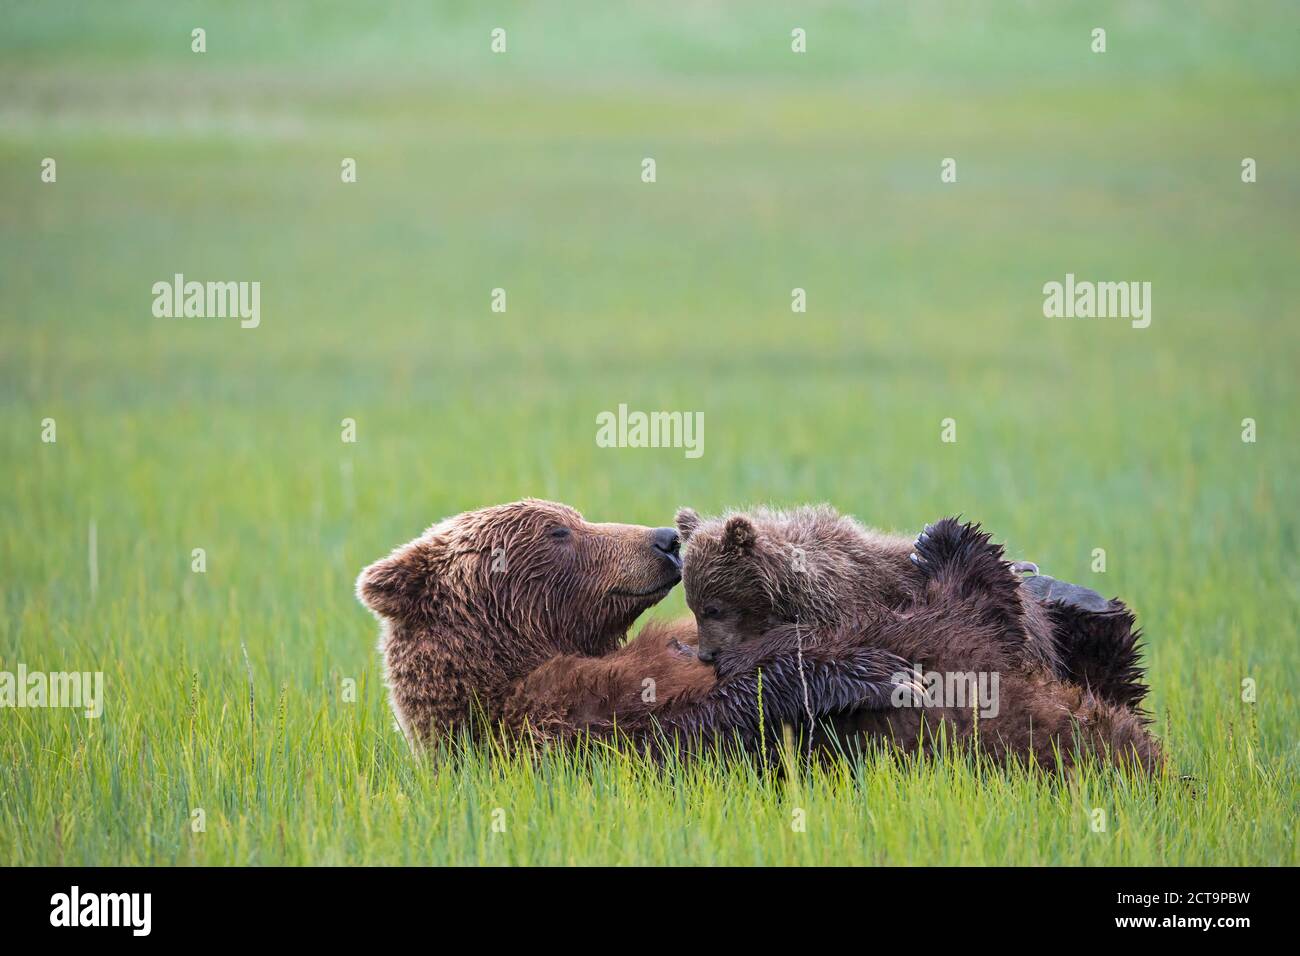 USA, Alaska, Lake Clark National Park and Preserve, Brown bear and bear cub (Ursus arctos), lactating Stock Photo